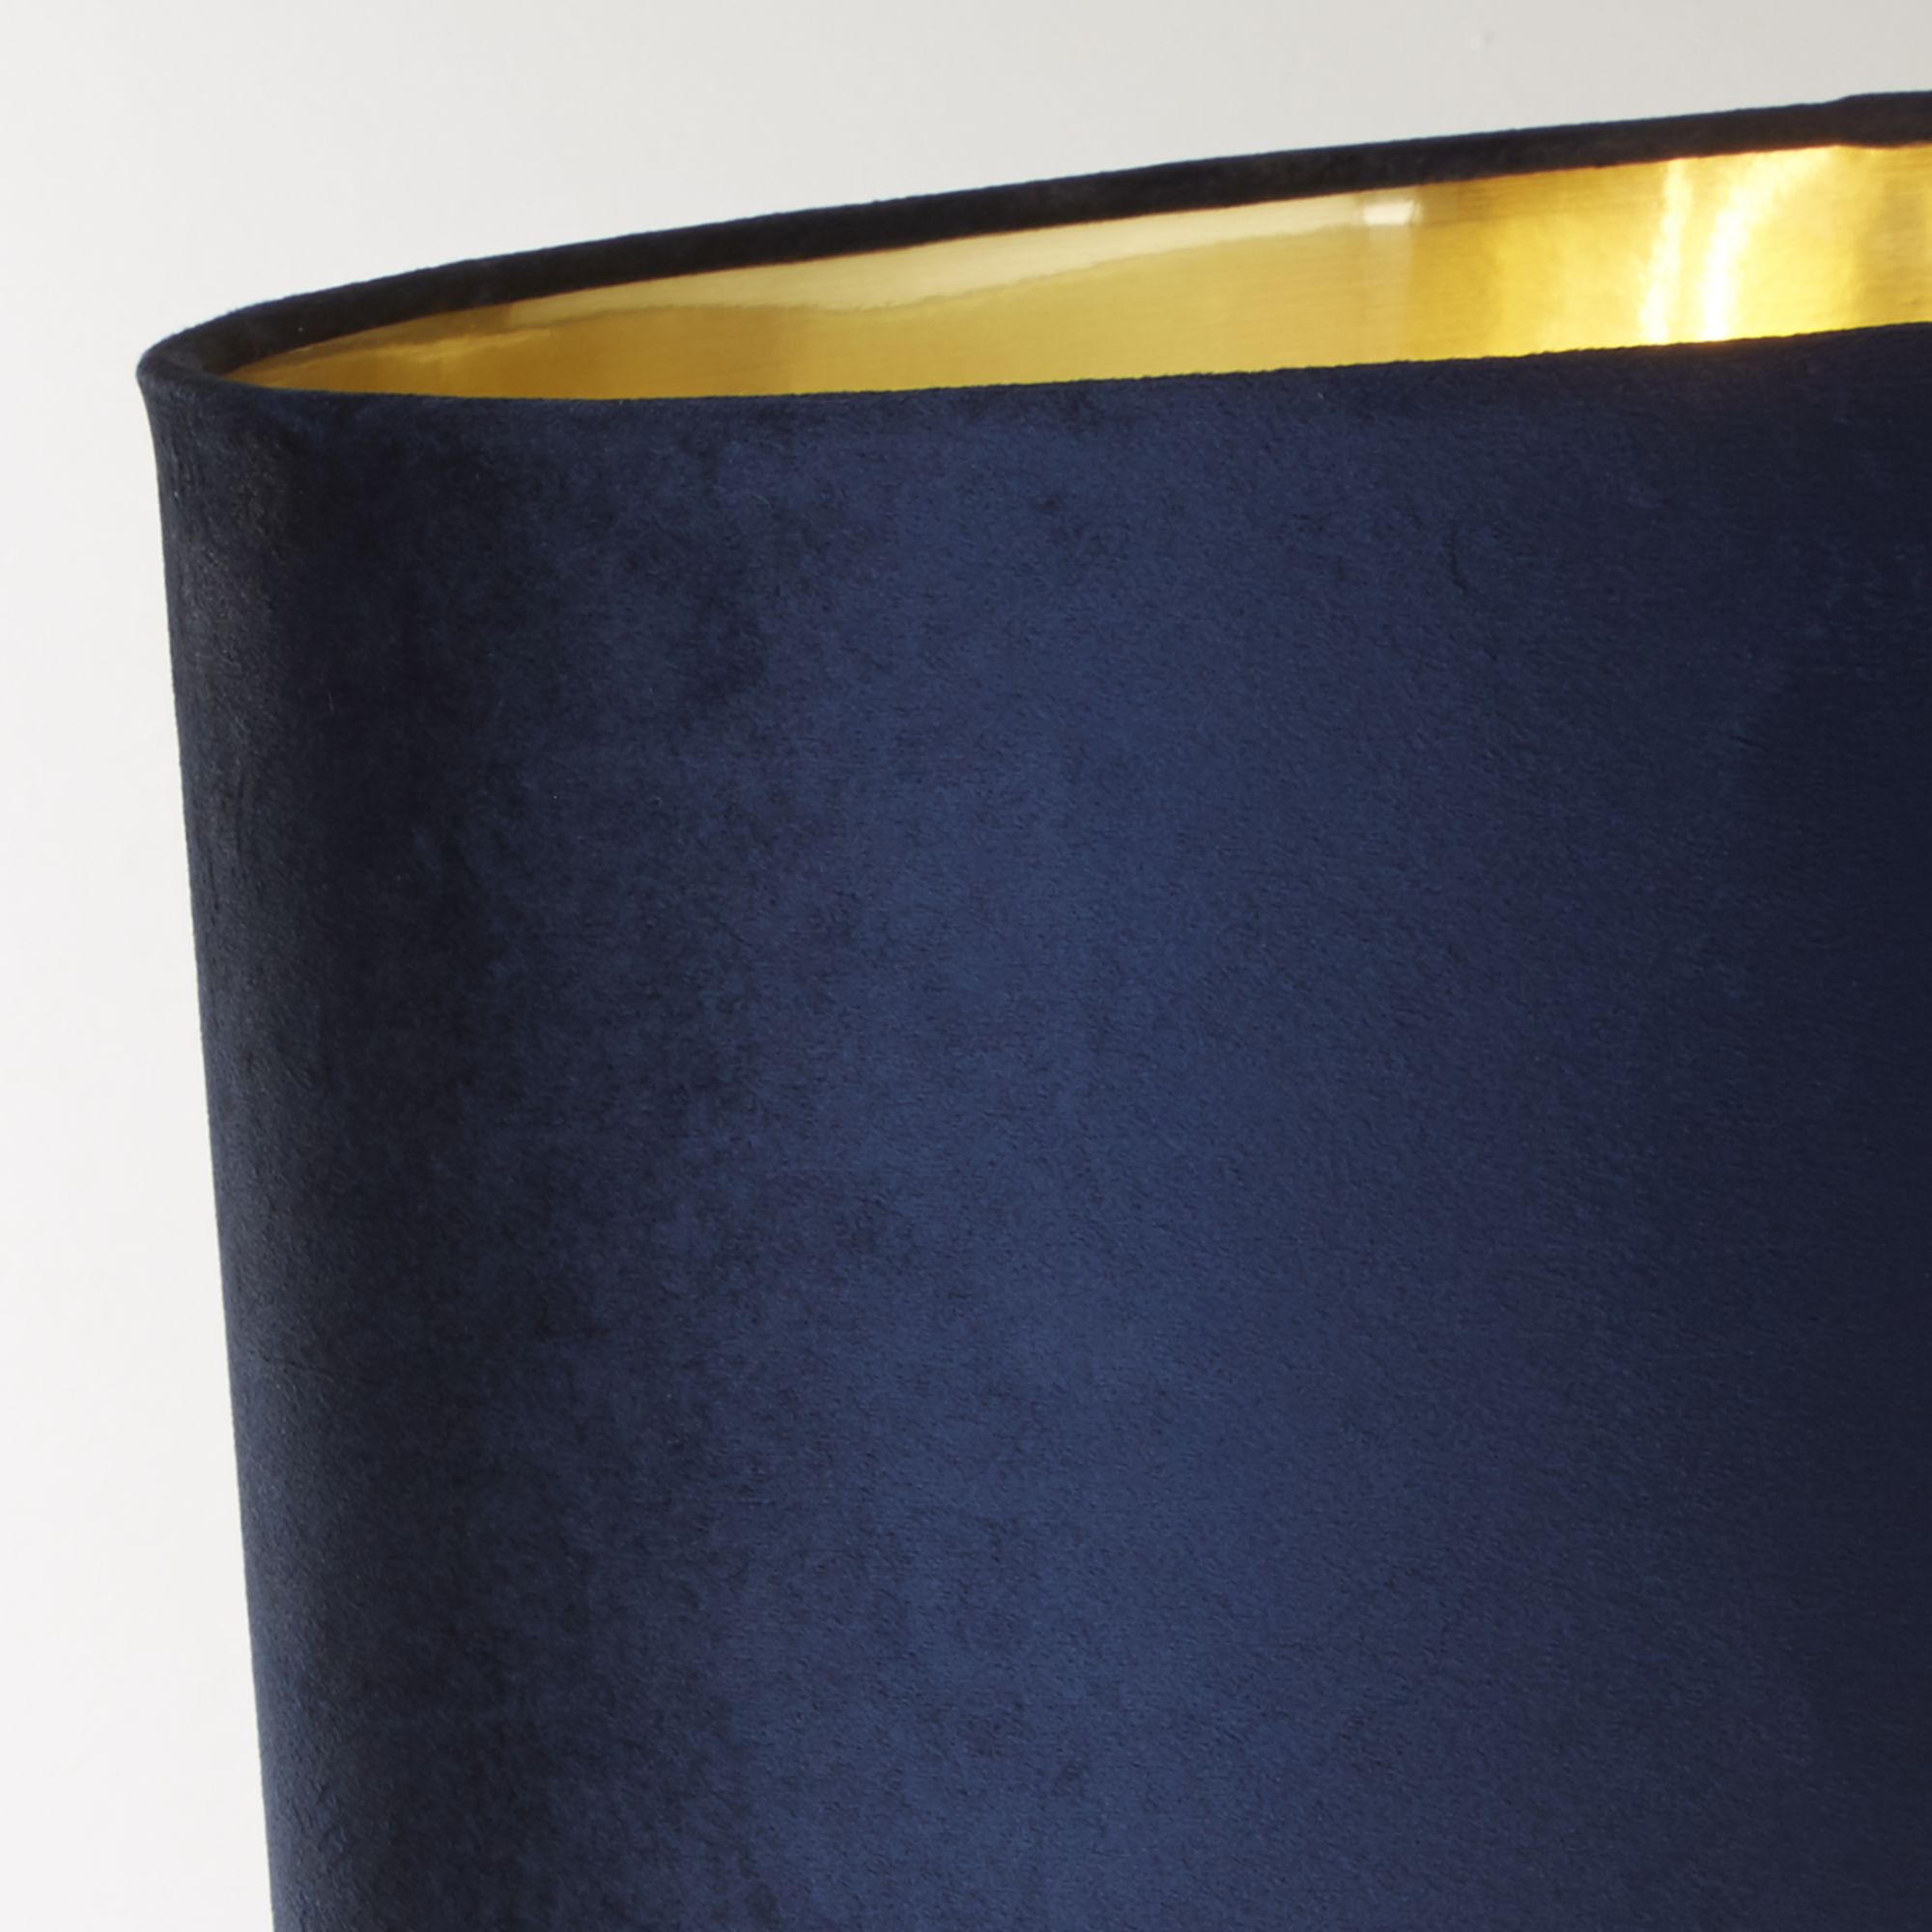 Whitby Table Lamp - Antique Brass & Navy Velvet Shade